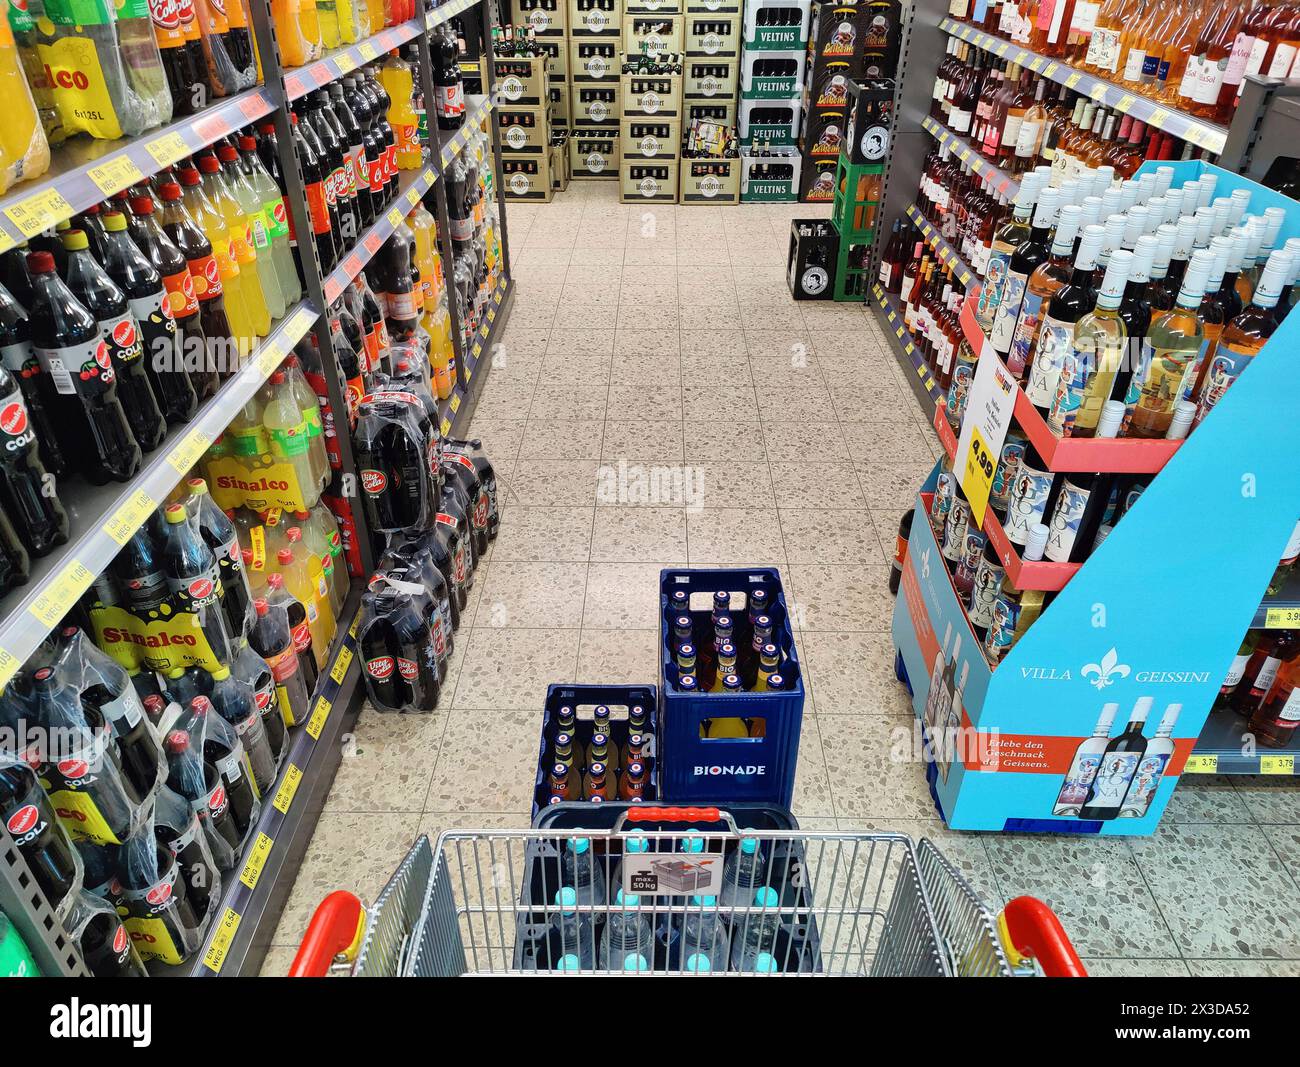 Il carrello della spesa viene spinto attraverso un negozio di bevande, in Germania Foto Stock